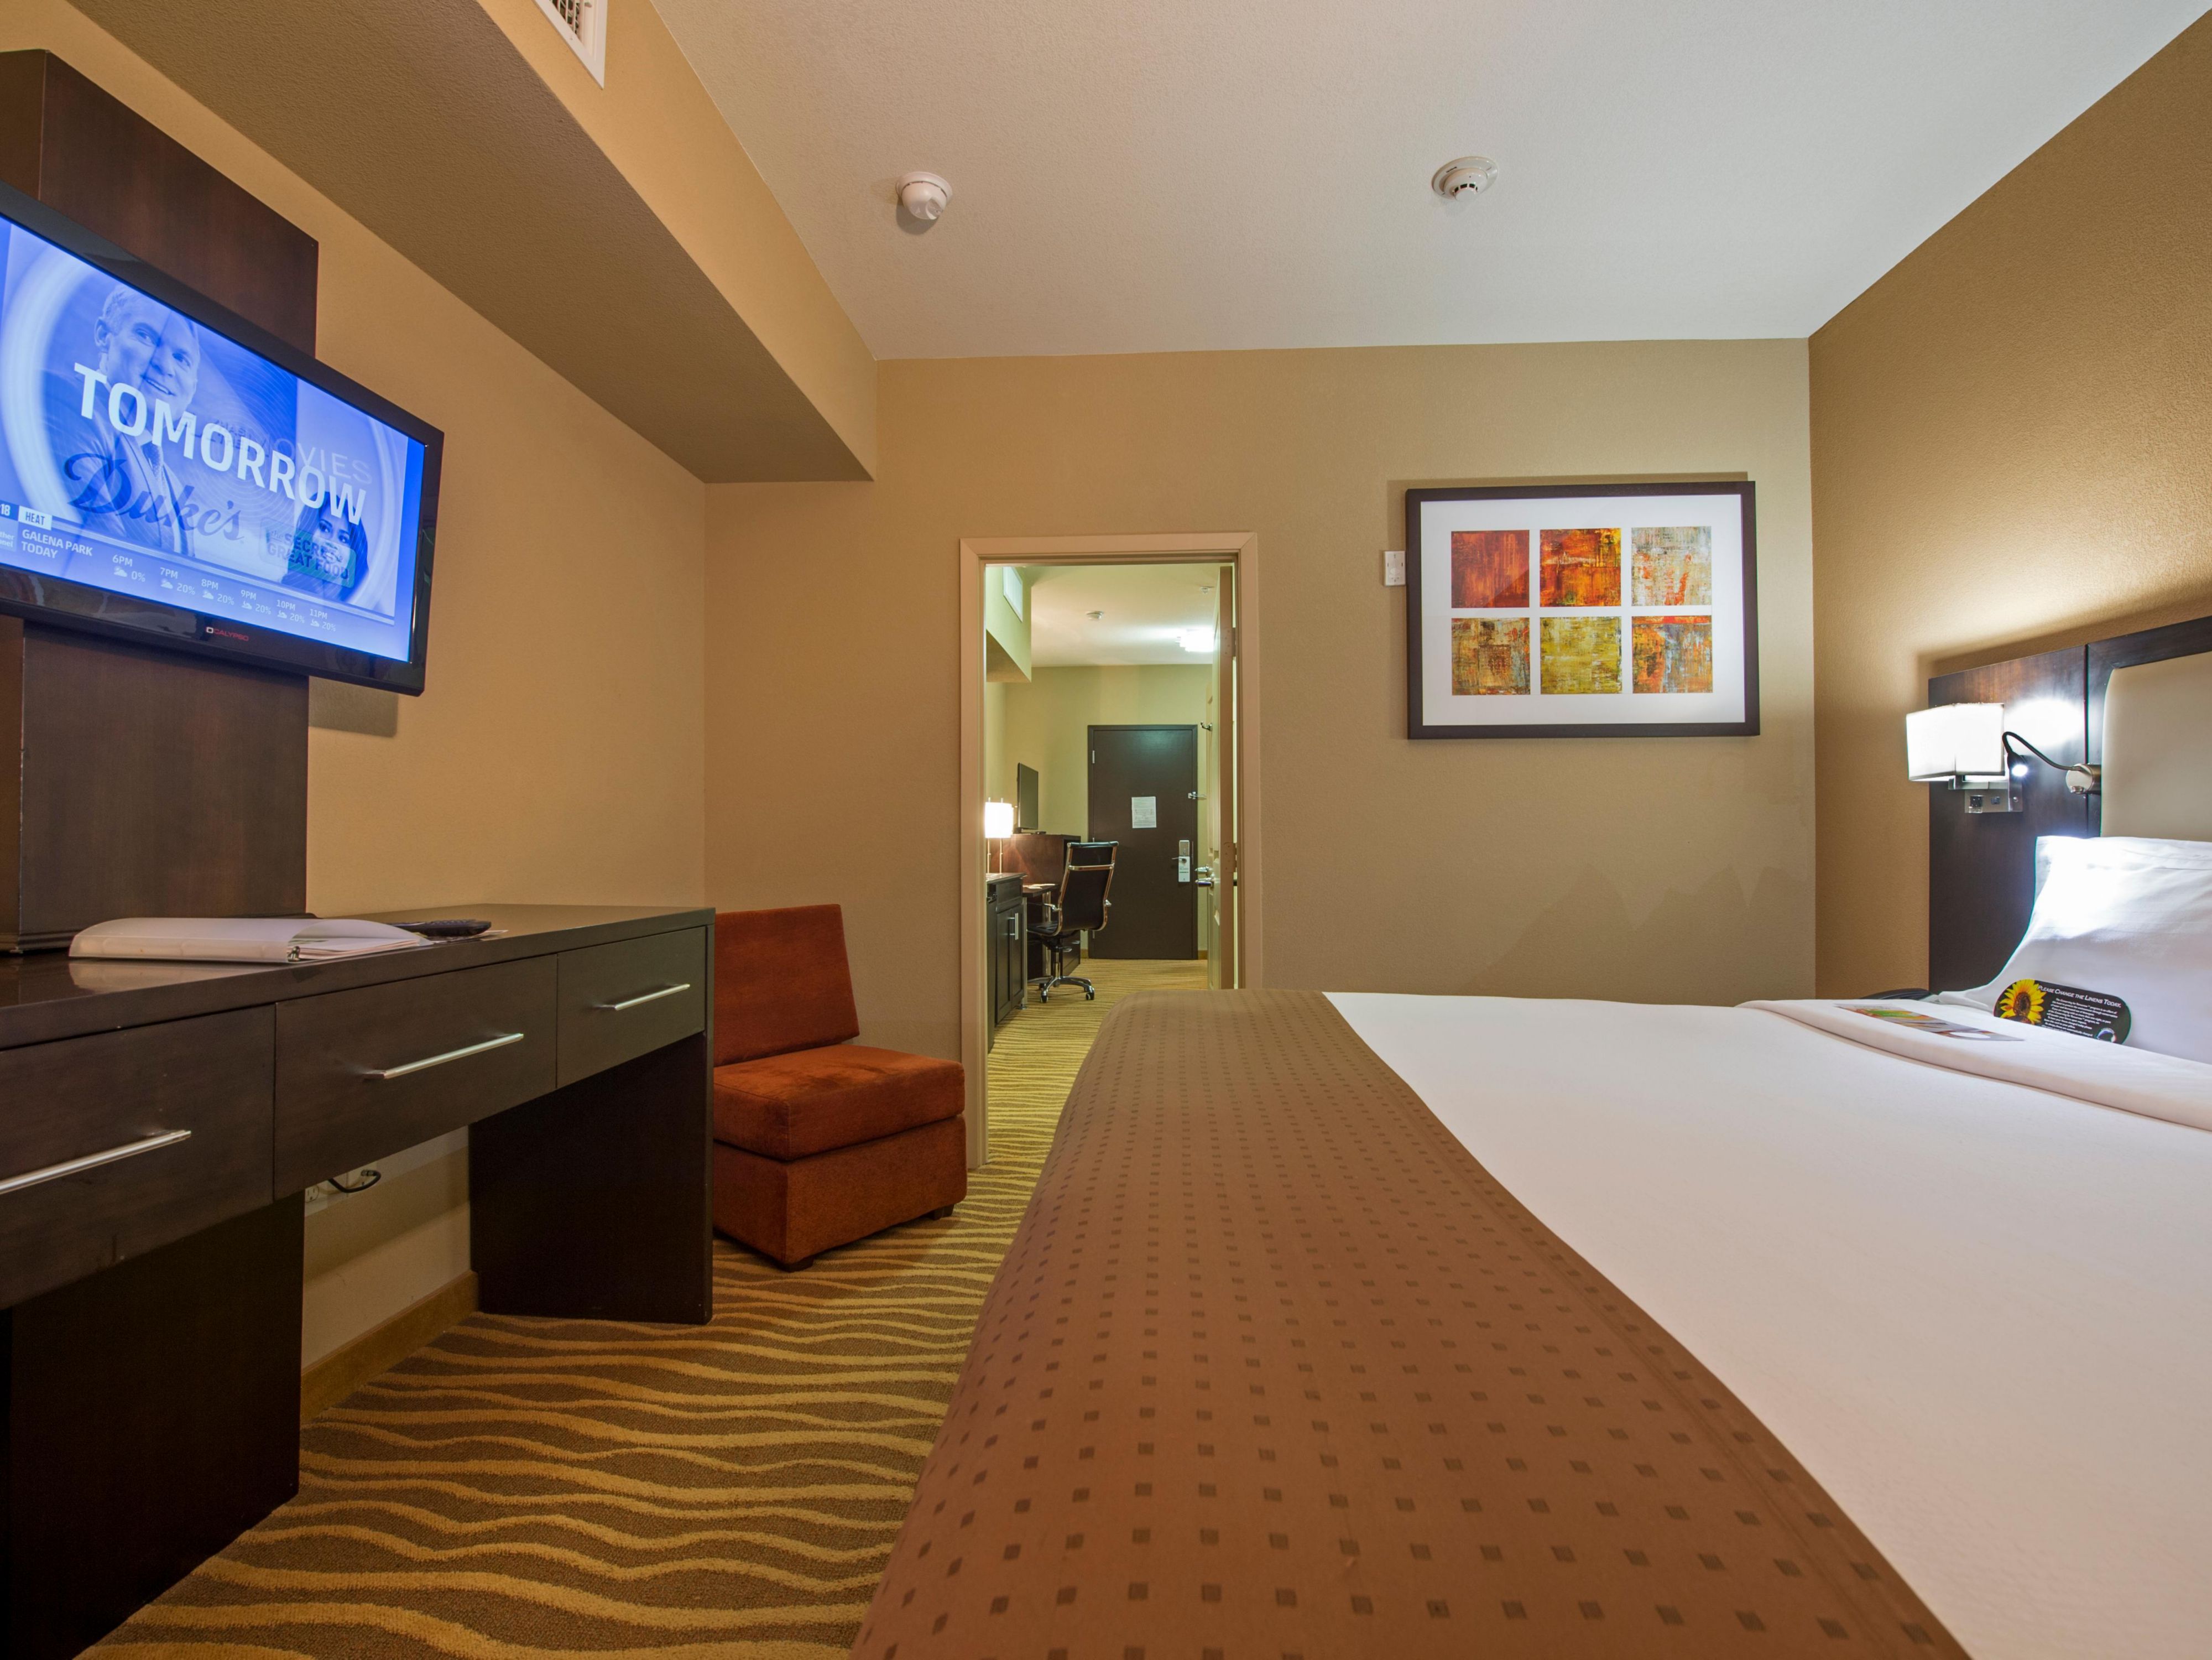 Holiday Inn-hotelkamers